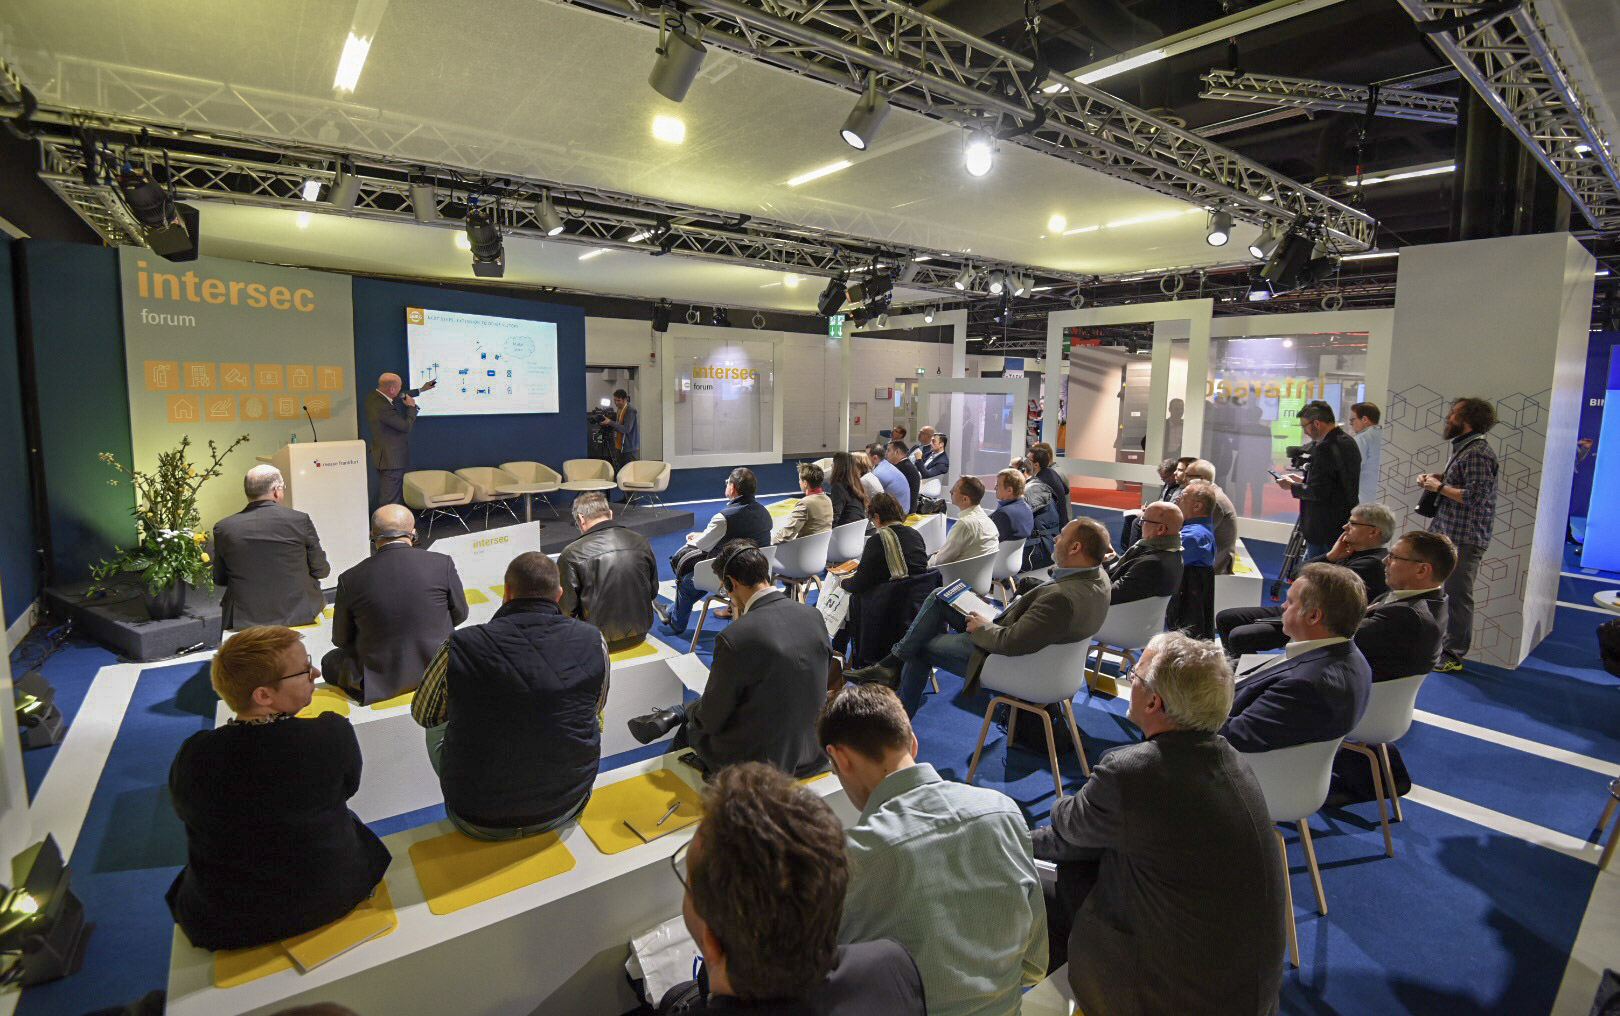 4. Intersec Forum: Konferenz teilt das Wissen für die Vernetzung der Sicherheitstechnik in den Branchen der Gebäudetechnik